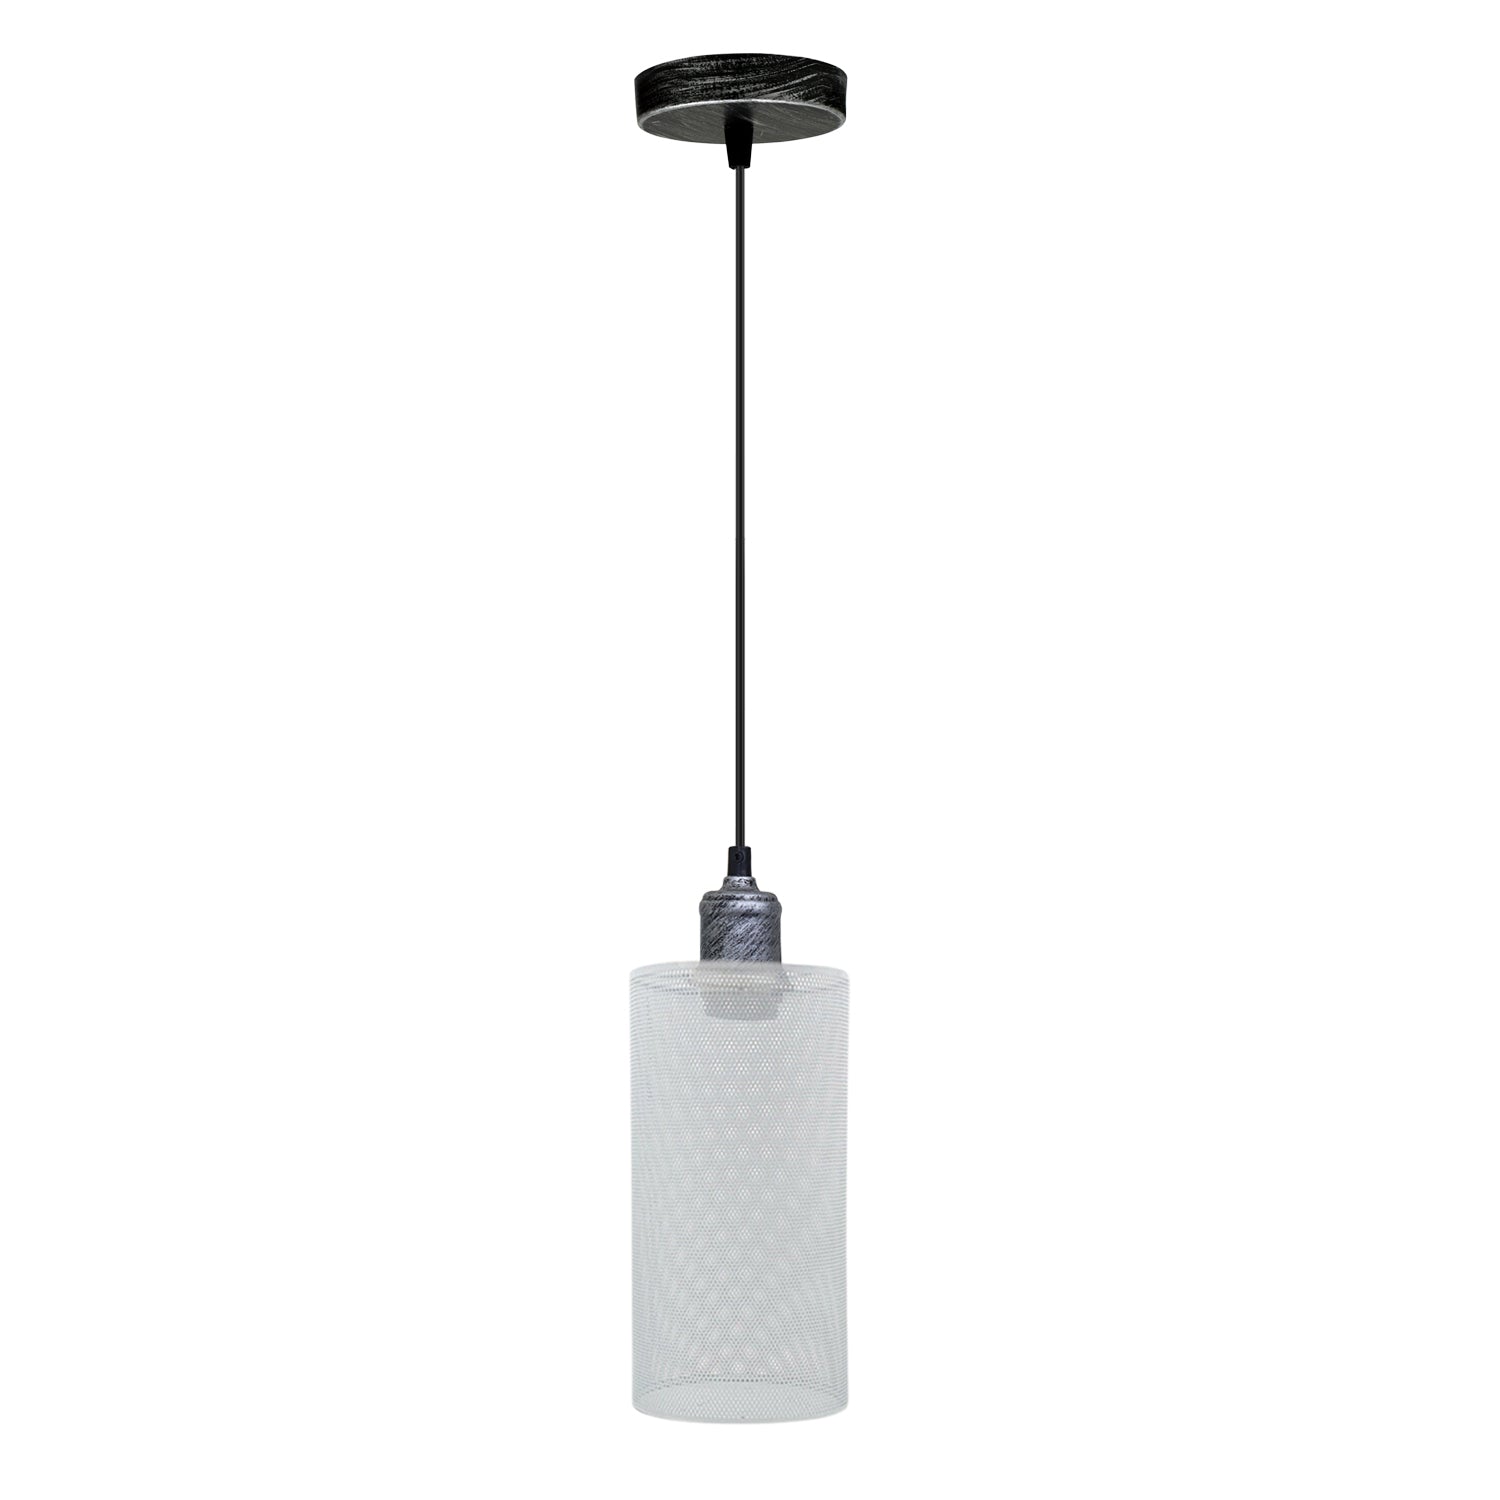 Industrial Hanging Pattern White Lamp shade Wedding Decoration Metal Lanterns~3443 - LEDSone UK Ltd